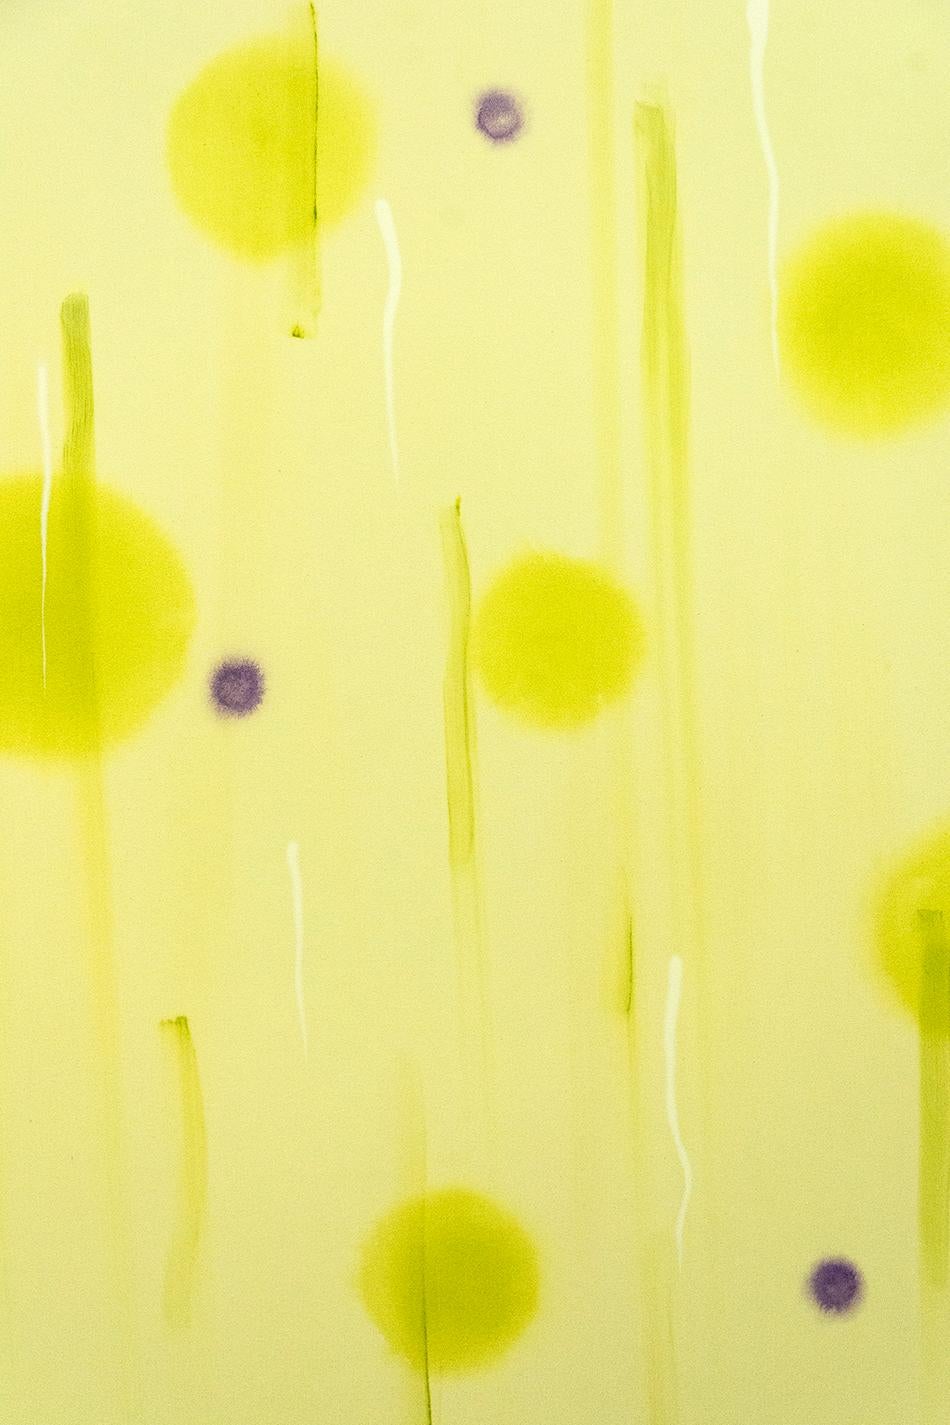 Vivre choses vivantes - grand, brillant, coloré, jaune, abstraction, acrylique sur toile - Painting de Milly Ristvedt